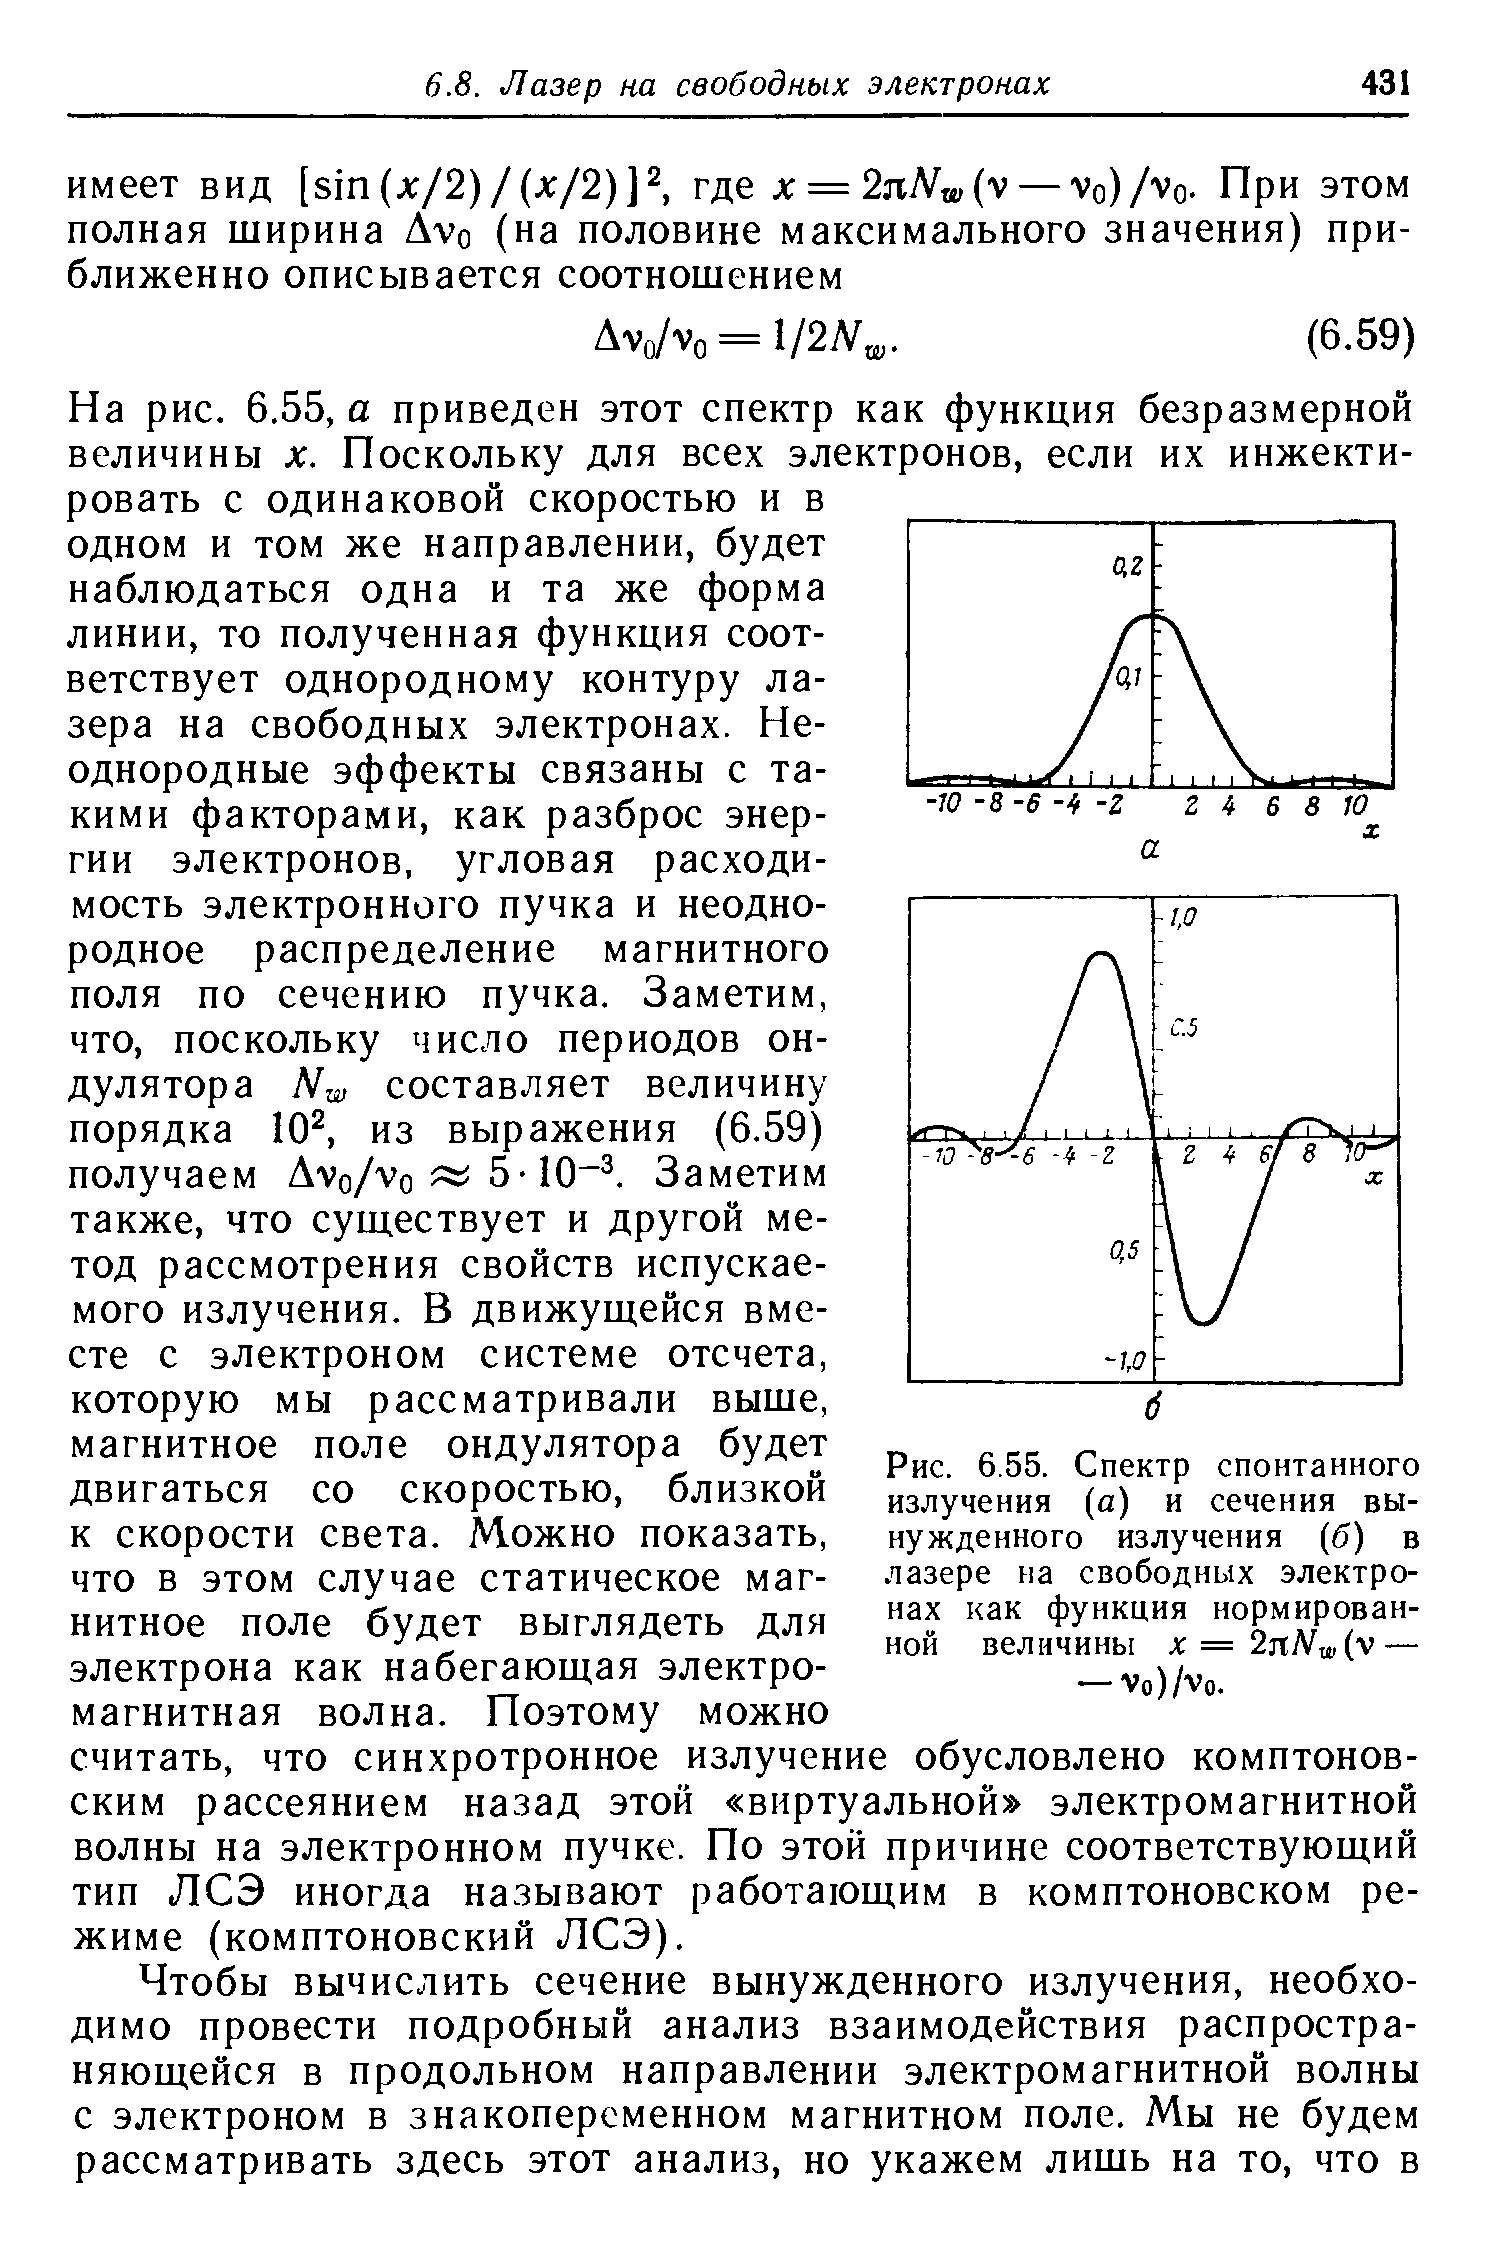 Рис. 6.55. Спектр спонтанного излучения (а) и <a href="/info/144161">сечения вынужденного излучения</a> (б) в лазере на <a href="/info/188635">свободных электронах</a> как функция нормированной величины x=2nNw(y — — Vo)/Vo.
